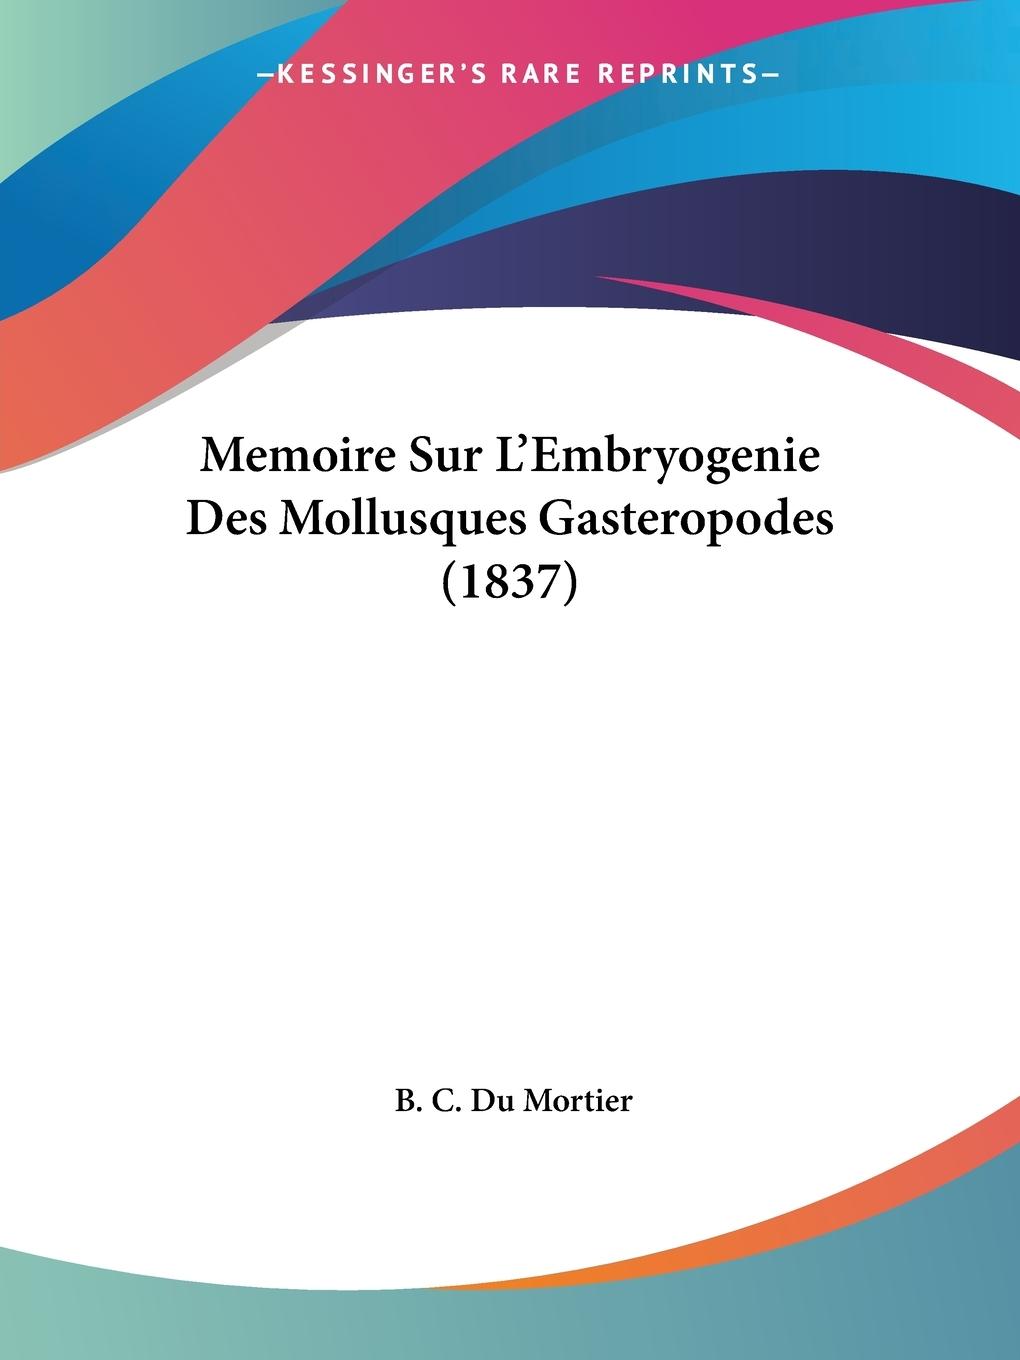 Memoire Sur L Embryogenie Des Mollusques Gasteropodes (1837) - Du Mortier, B. C.